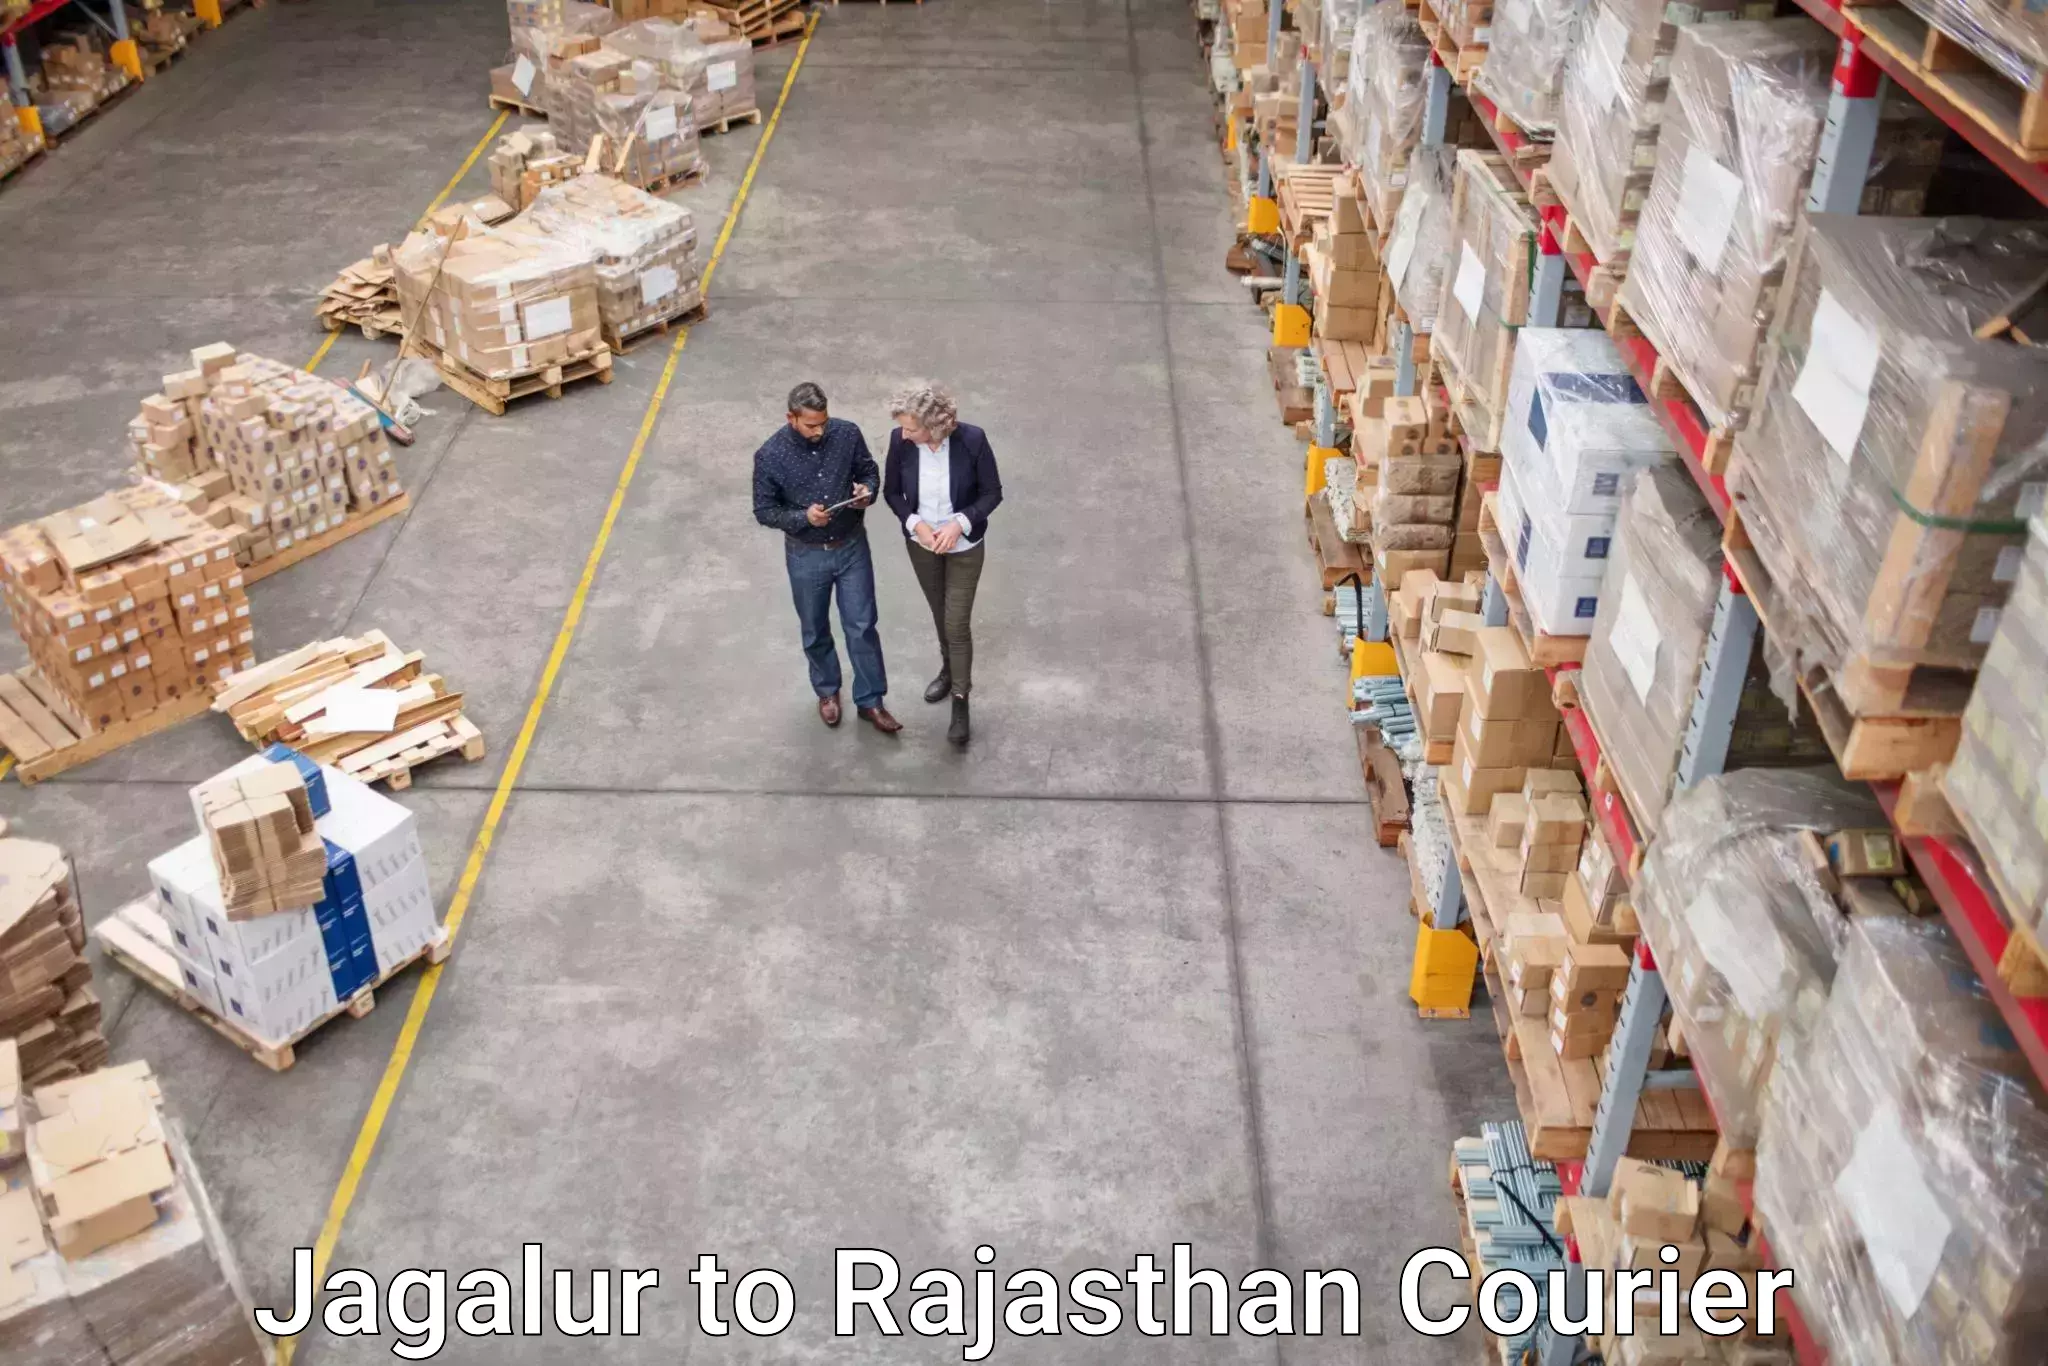 Courier service comparison Jagalur to Shri Dungargarh